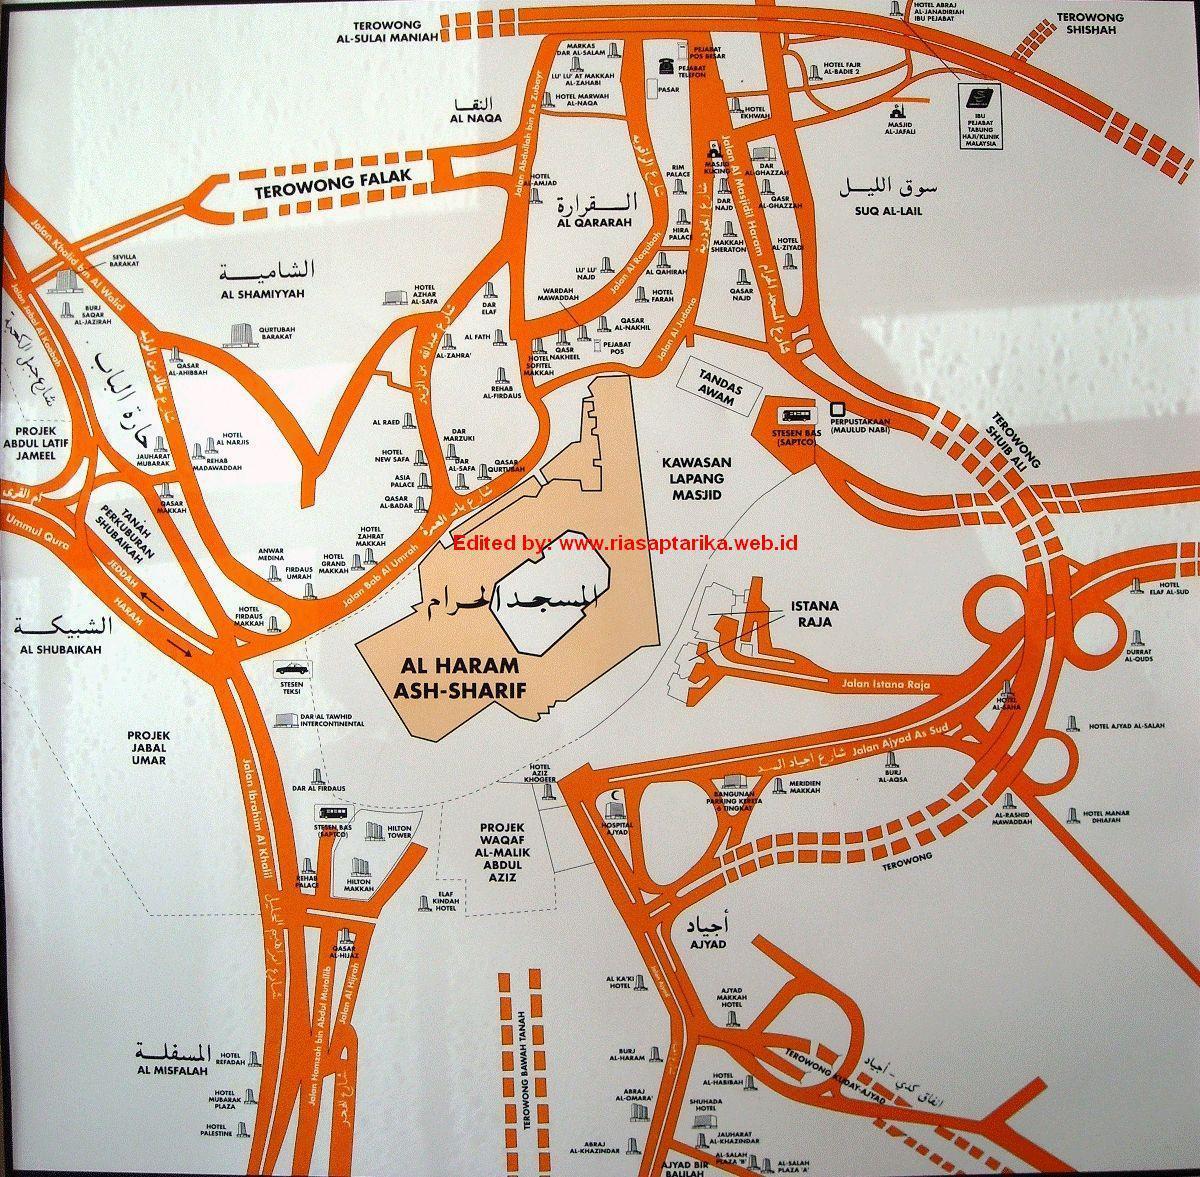 zemljevid misfalah Makkah zemljevid